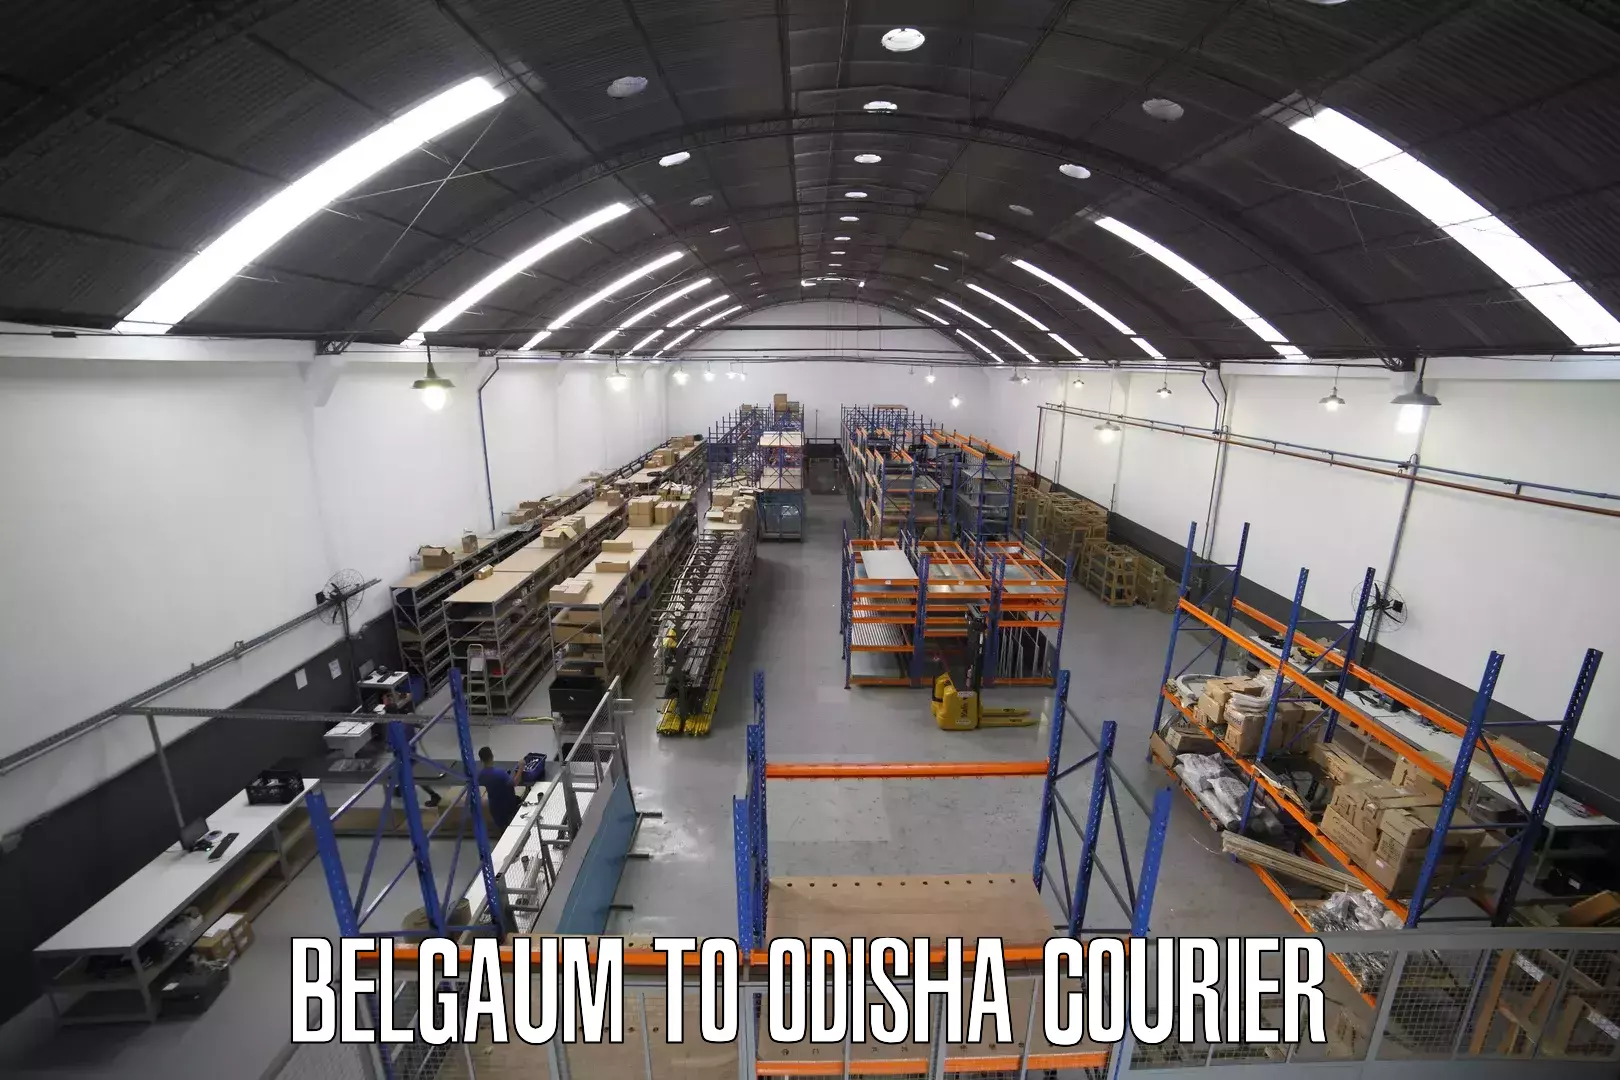 Local courier options Belgaum to Sohela